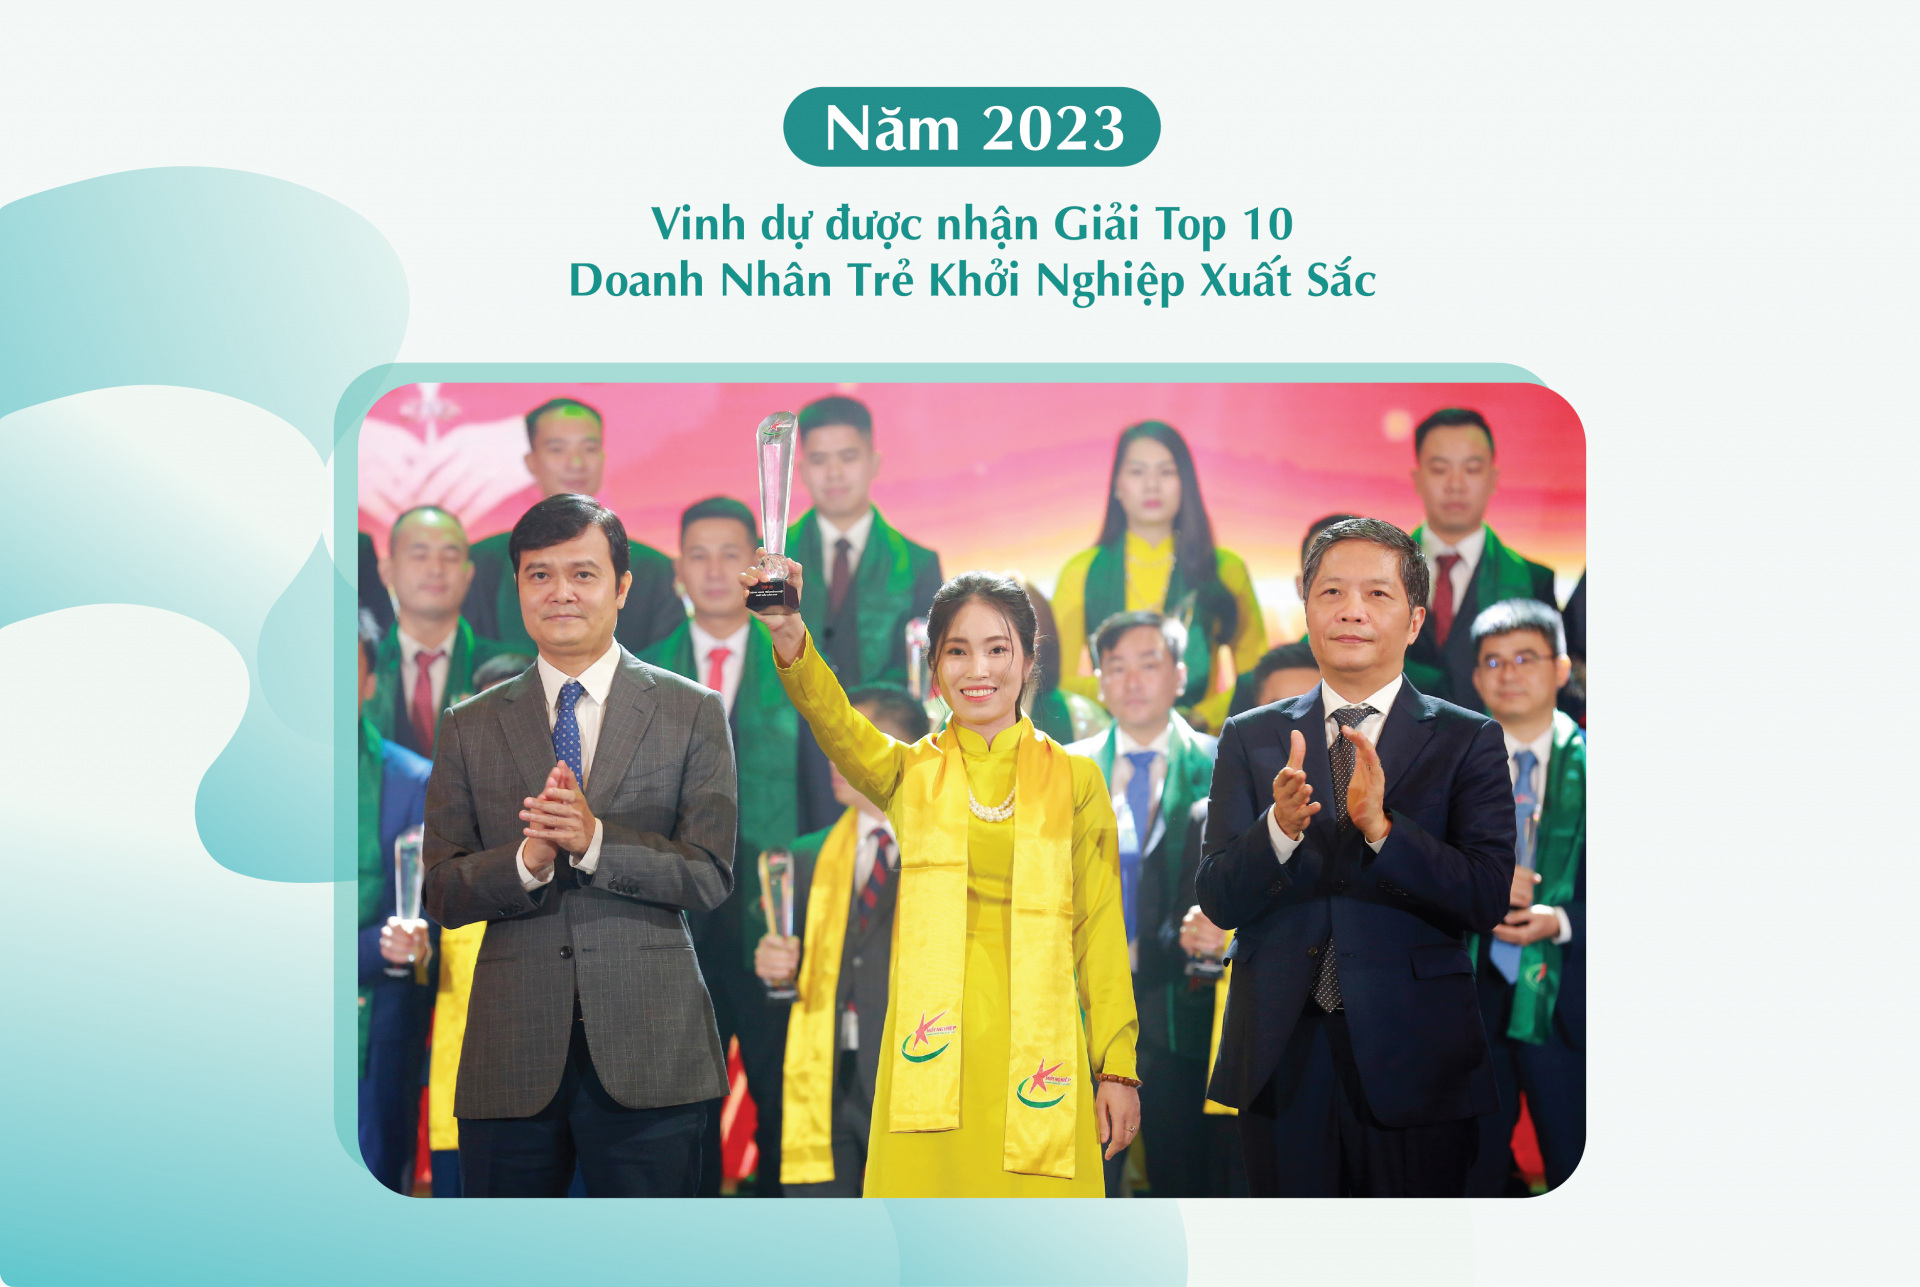 Năm 2023 Chị Hạnh vinh dự nhận giải “Top 10 Doanh nhân trẻ khởi nghiệp xuất sắc”